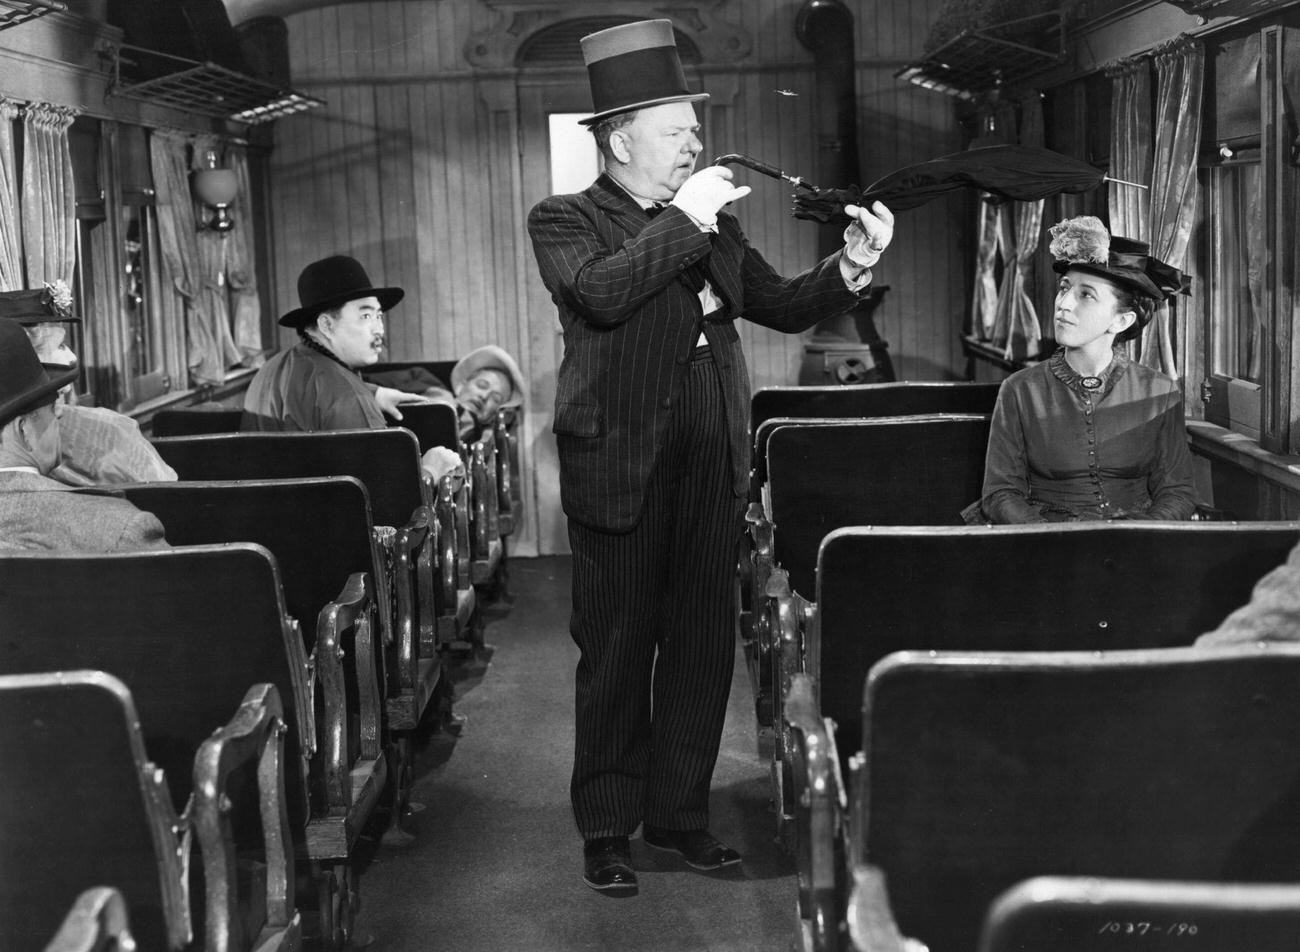 Margaret Hamilton bent umbrella in a scene from the film 'My Little Chickadee', in train